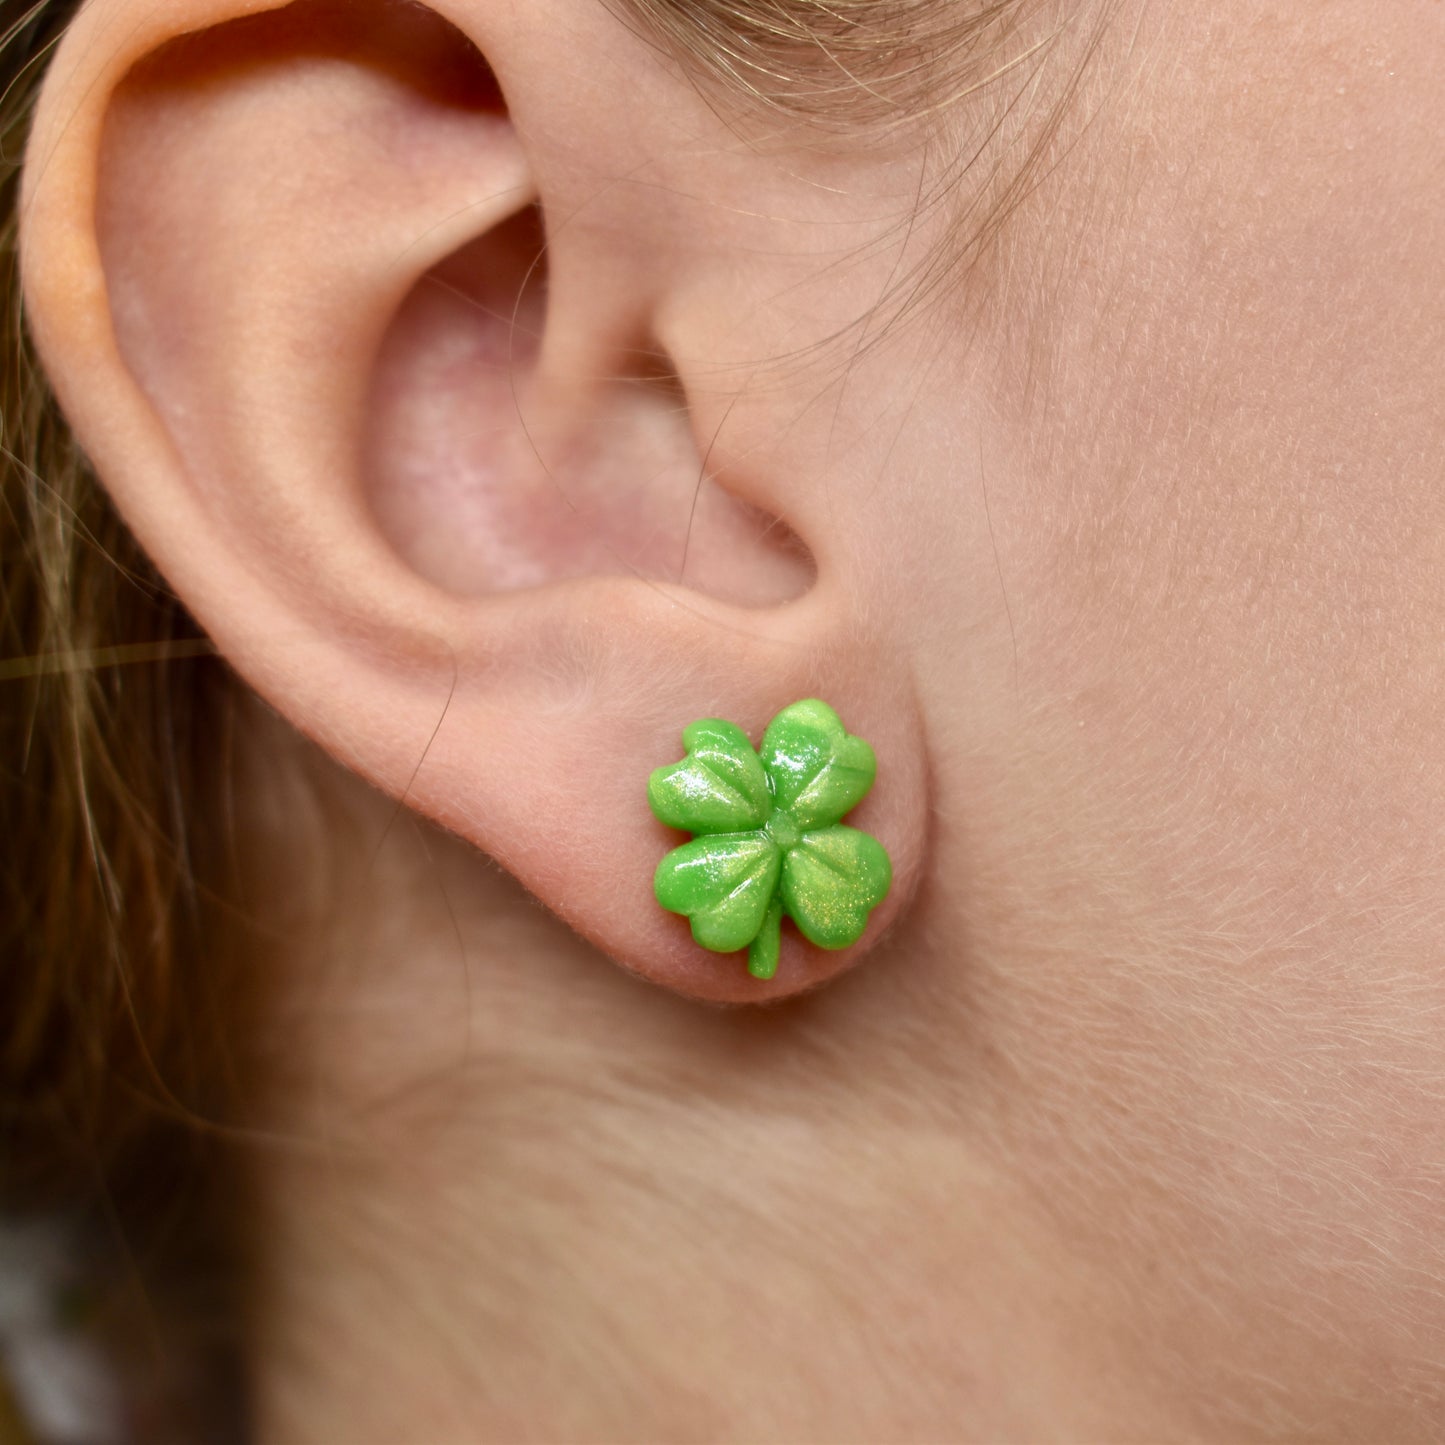 Four Leaf Clover Stud Earrings